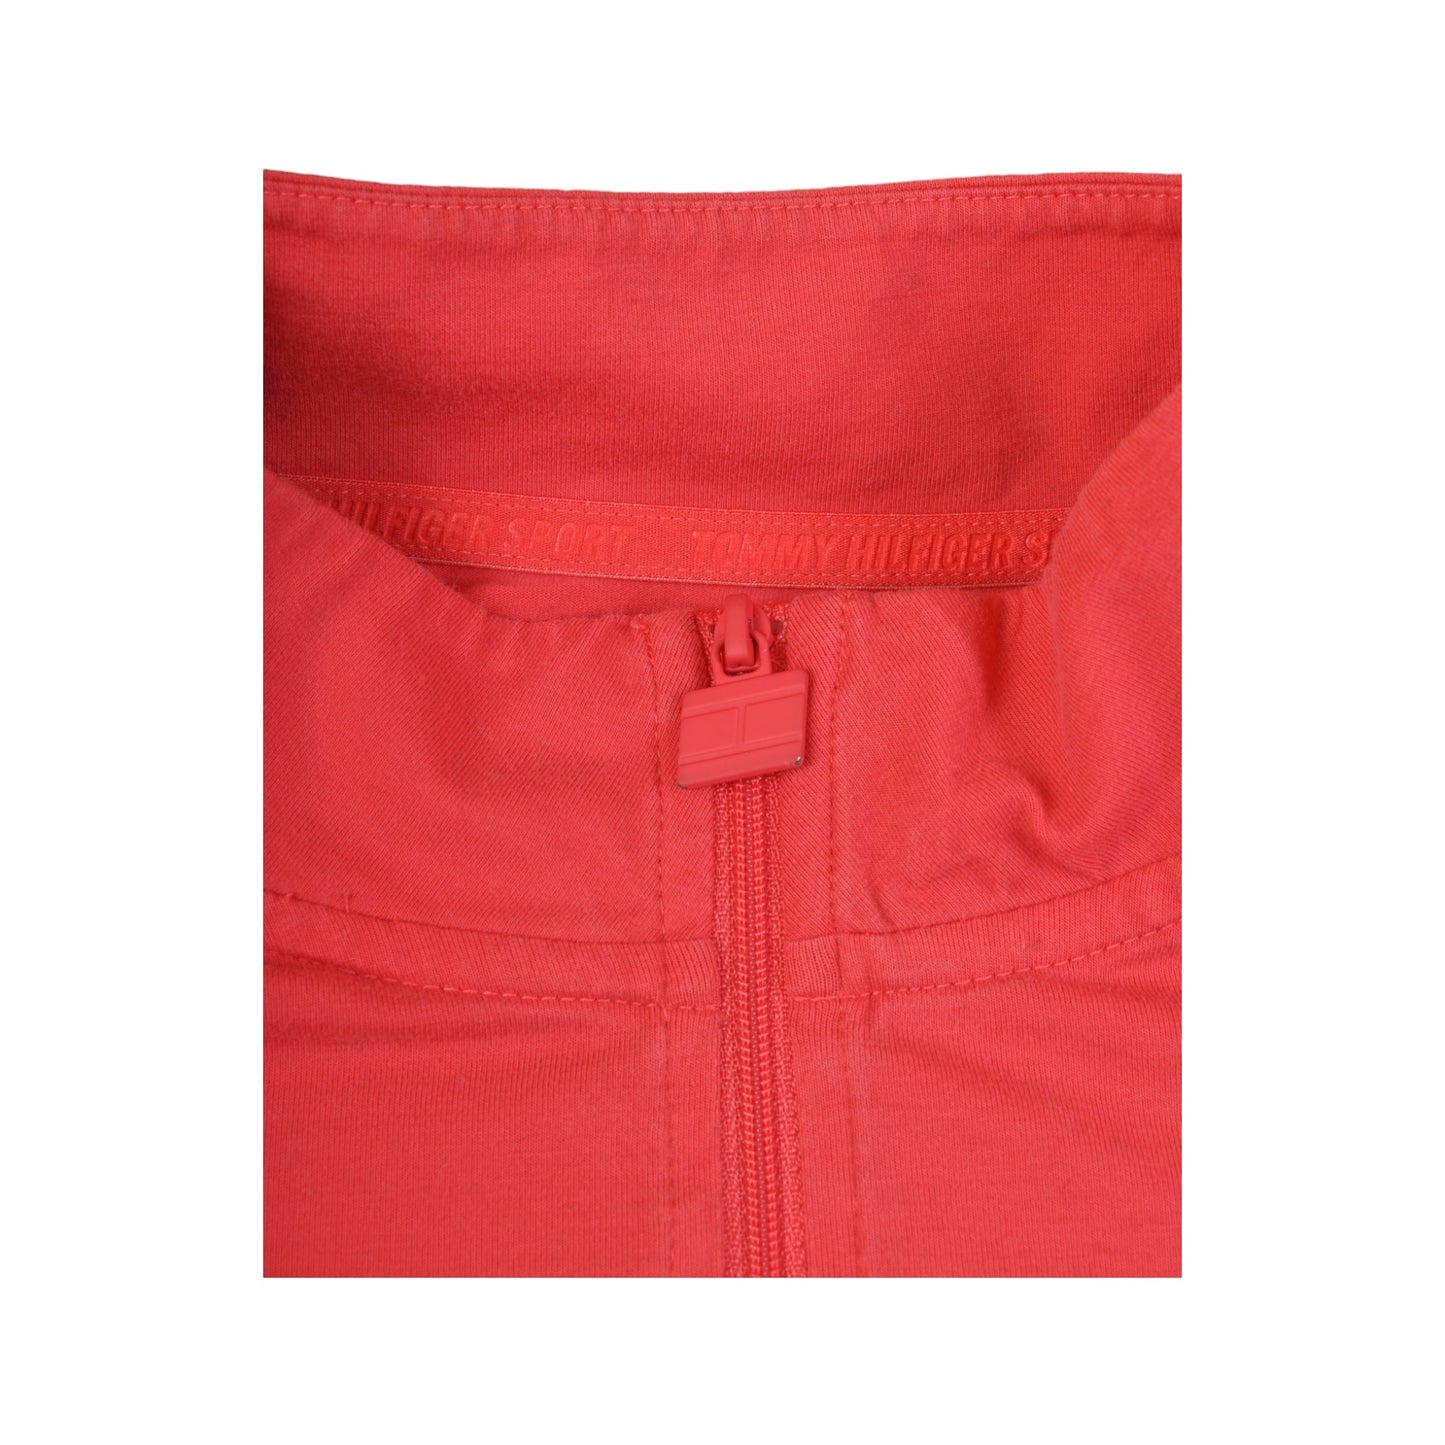 Vintage Tommy Hilfiger 1/4 Zip Sweatshirt Pink Ladies Large